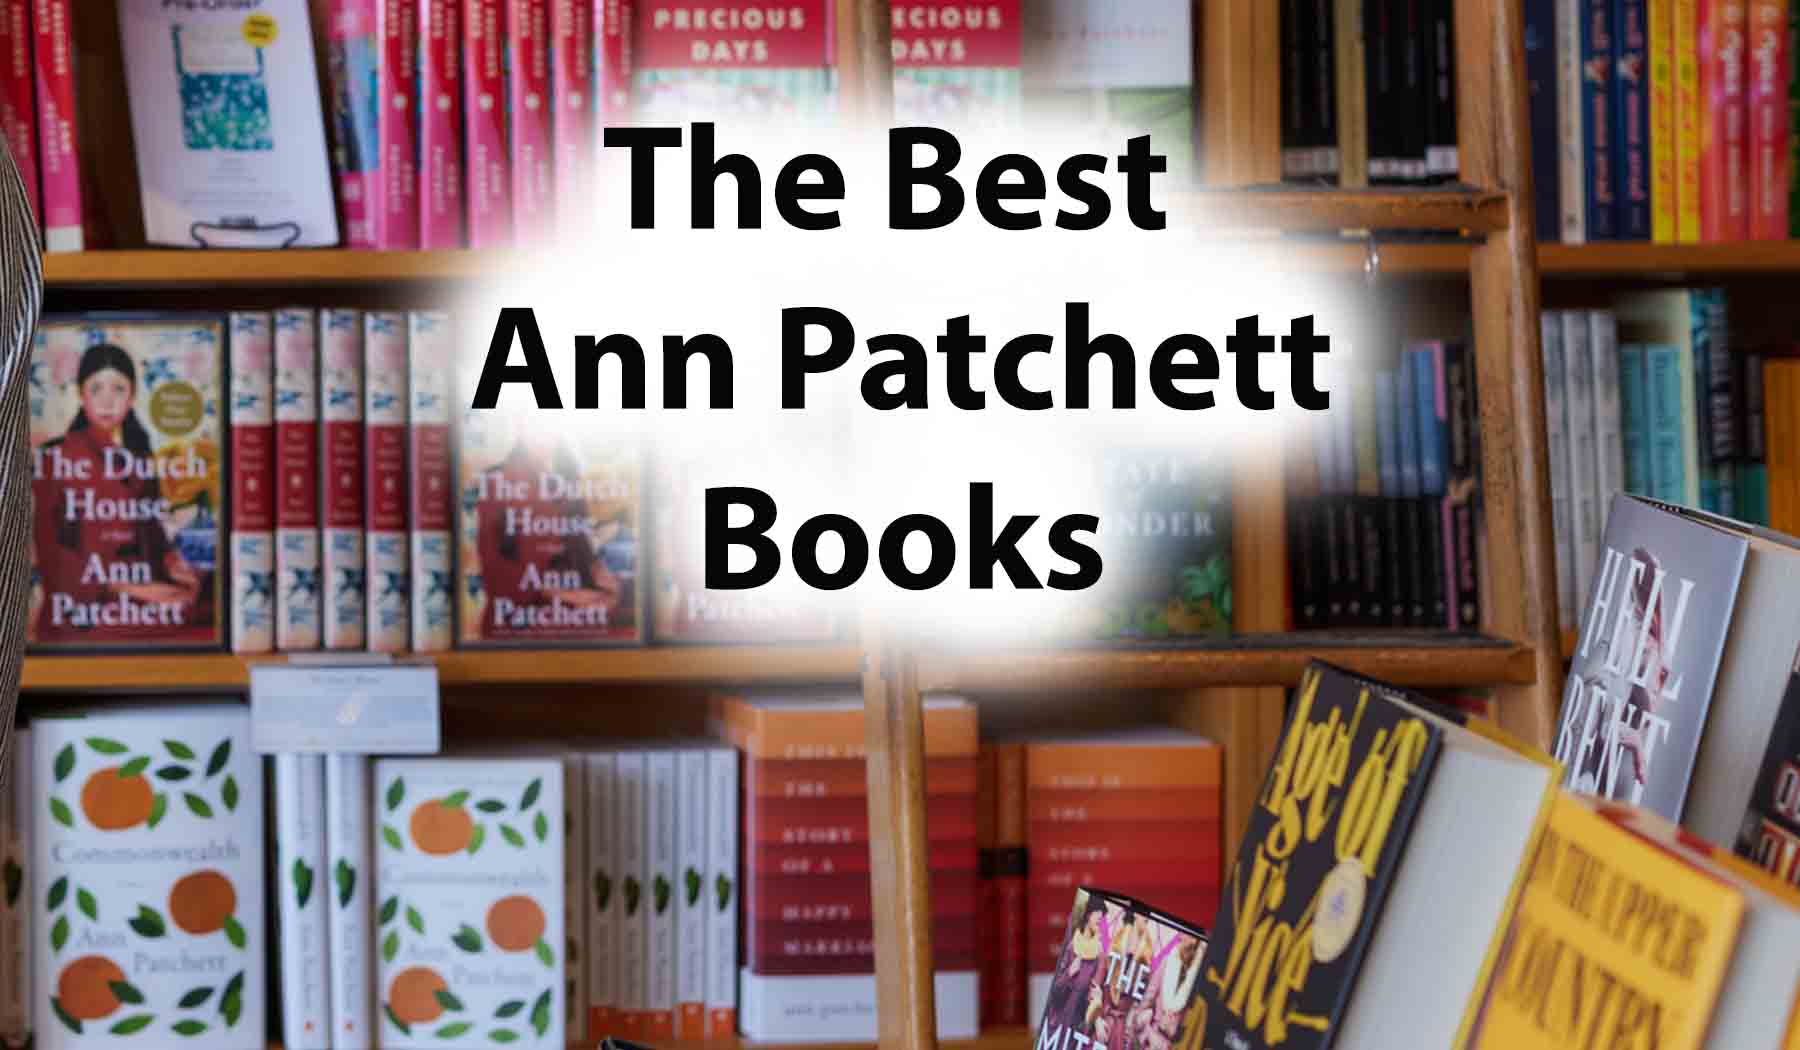 The Best Ann Patchett Books